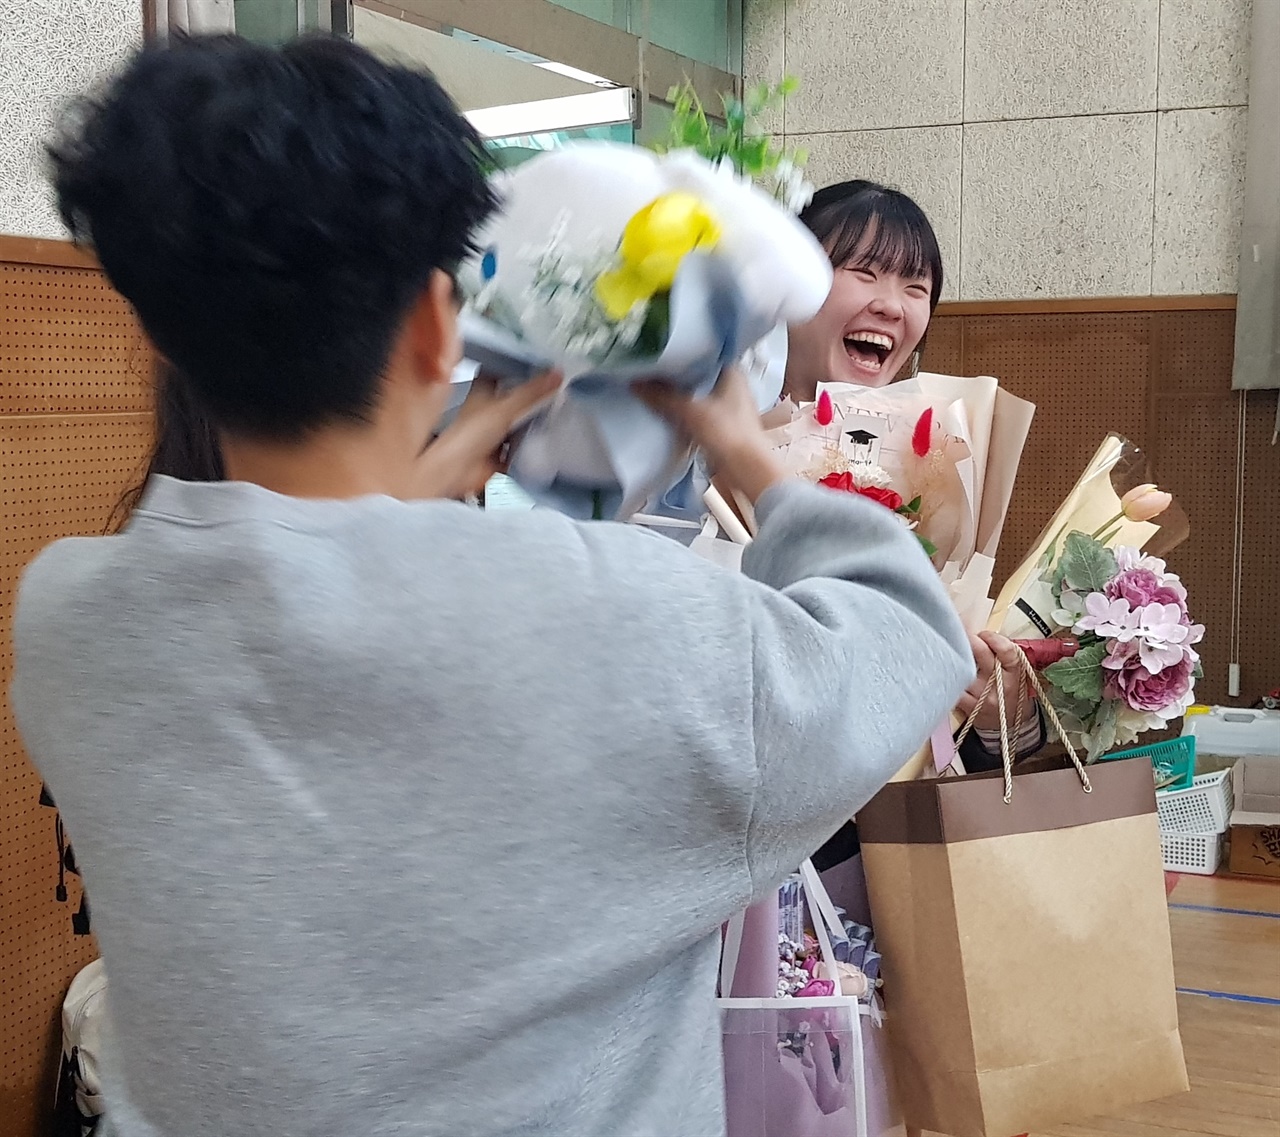 졸업식에서 여러 후배에게 꽃다발과 선물을 잔뜩 건네받은 학생이 활짝 웃고 있다.